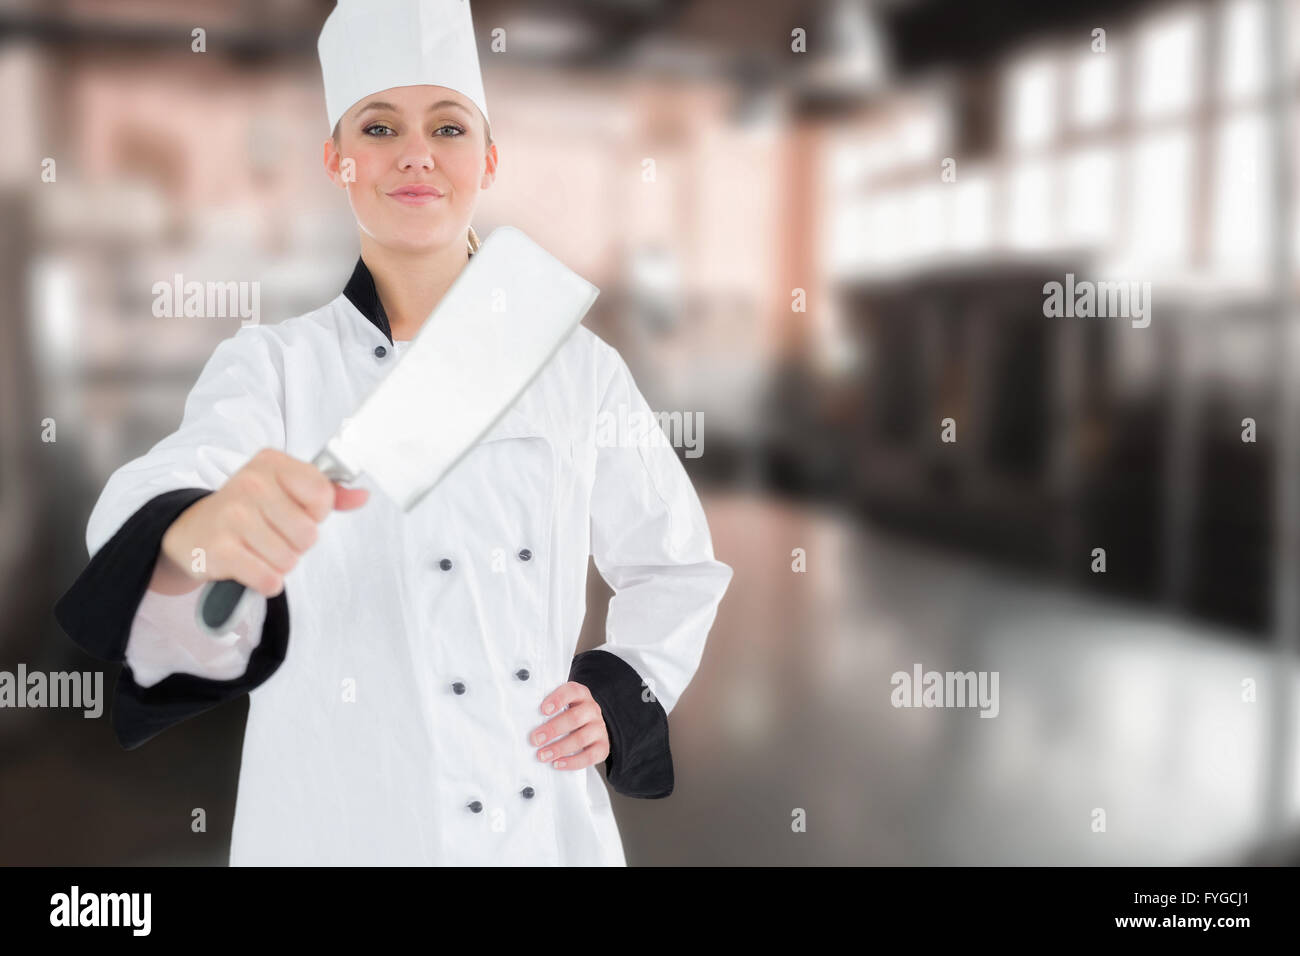 Immagine composita del ritratto femminile di chef con carne cleaver Foto Stock